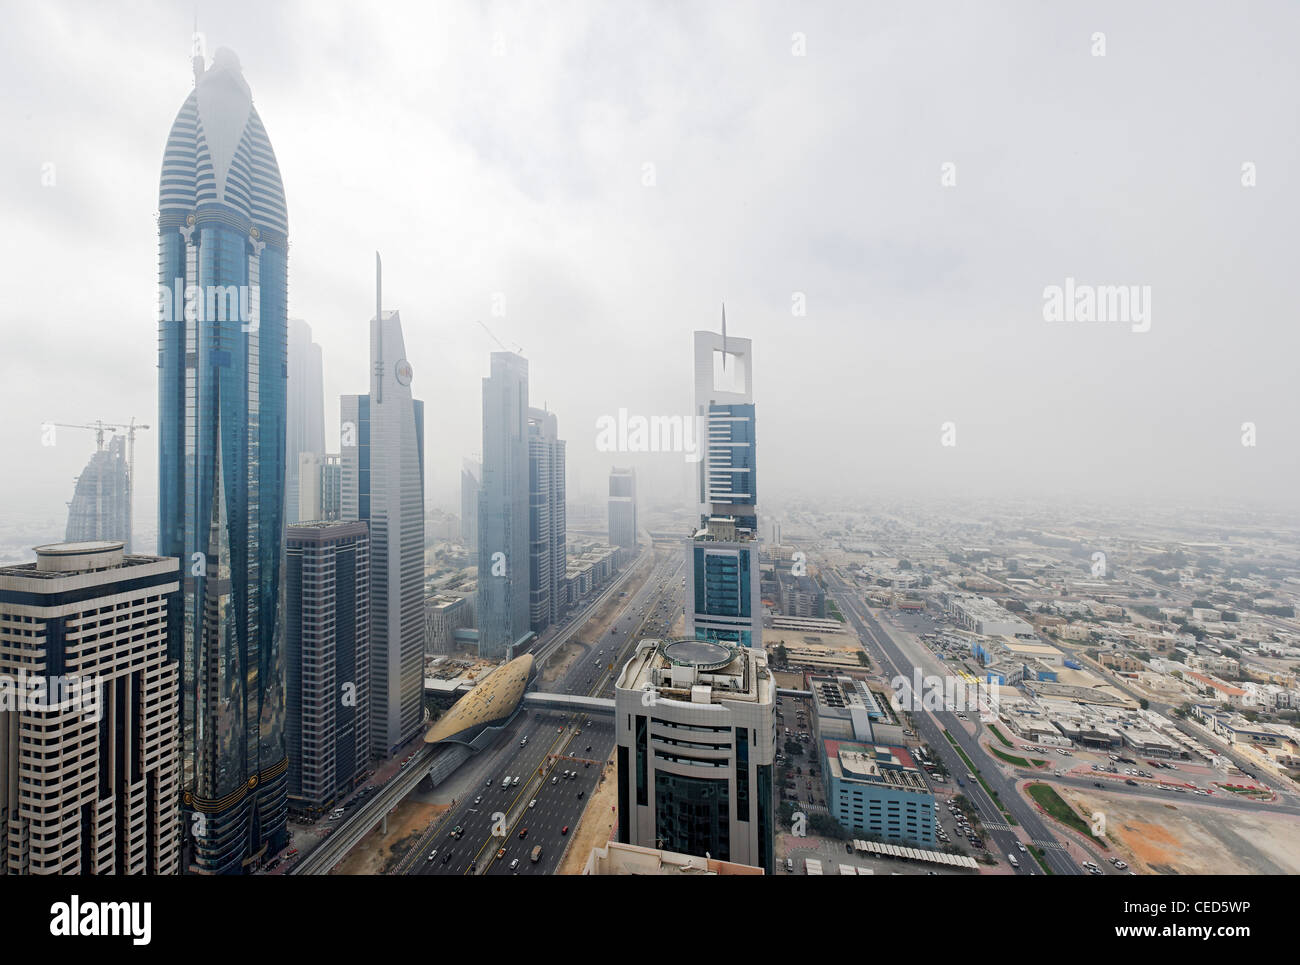 Des gratte-ciel, tours dans la brume du matin, ciel voilé, Dubaï, Émirats arabes unis, Moyen Orient Banque D'Images